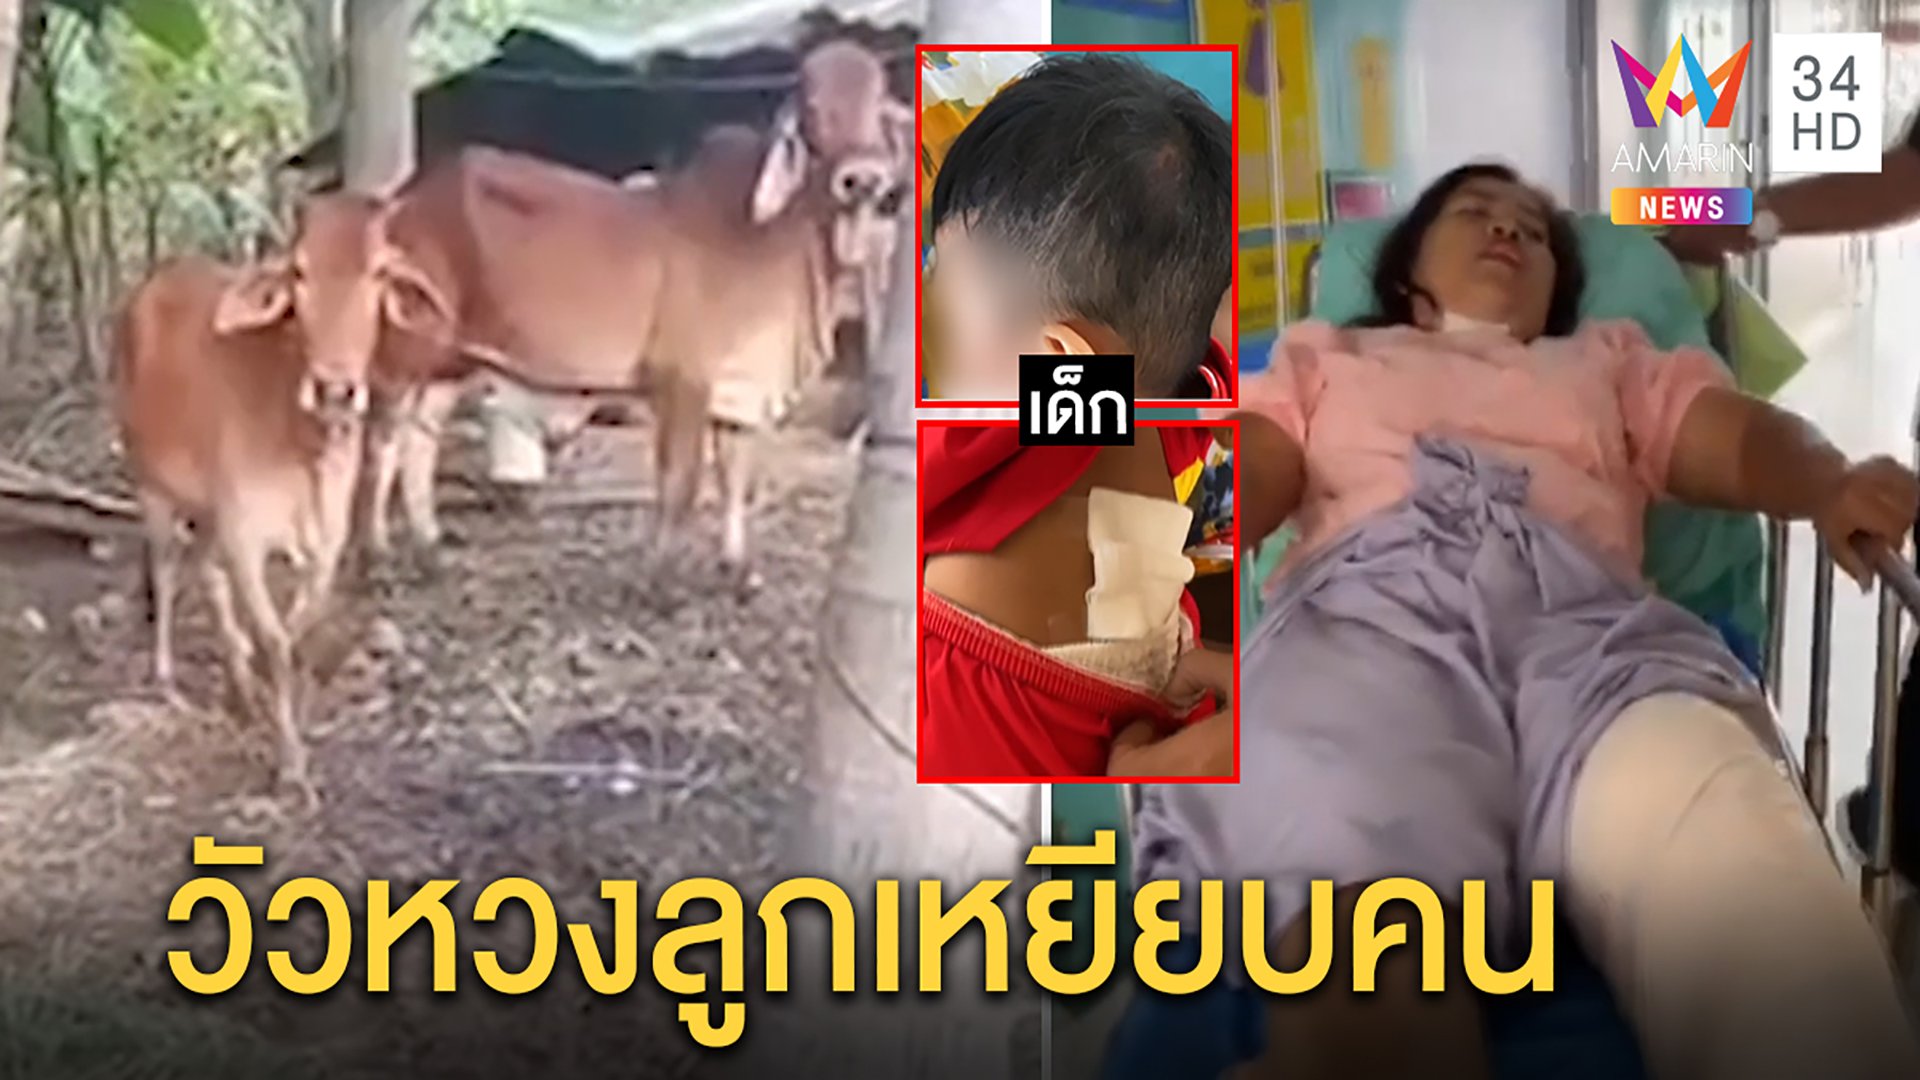 ระทึก!วัวแม่ลูกอ่อนคลั่งตื่นคนกระทืบเจ็บ 2 ป้าเผยนาทีเอาตัวบังหลาน 1 ขวบรอดตาย | ทุบโต๊ะข่าว | 9 พ.ย. 63 | AMARIN TVHD34